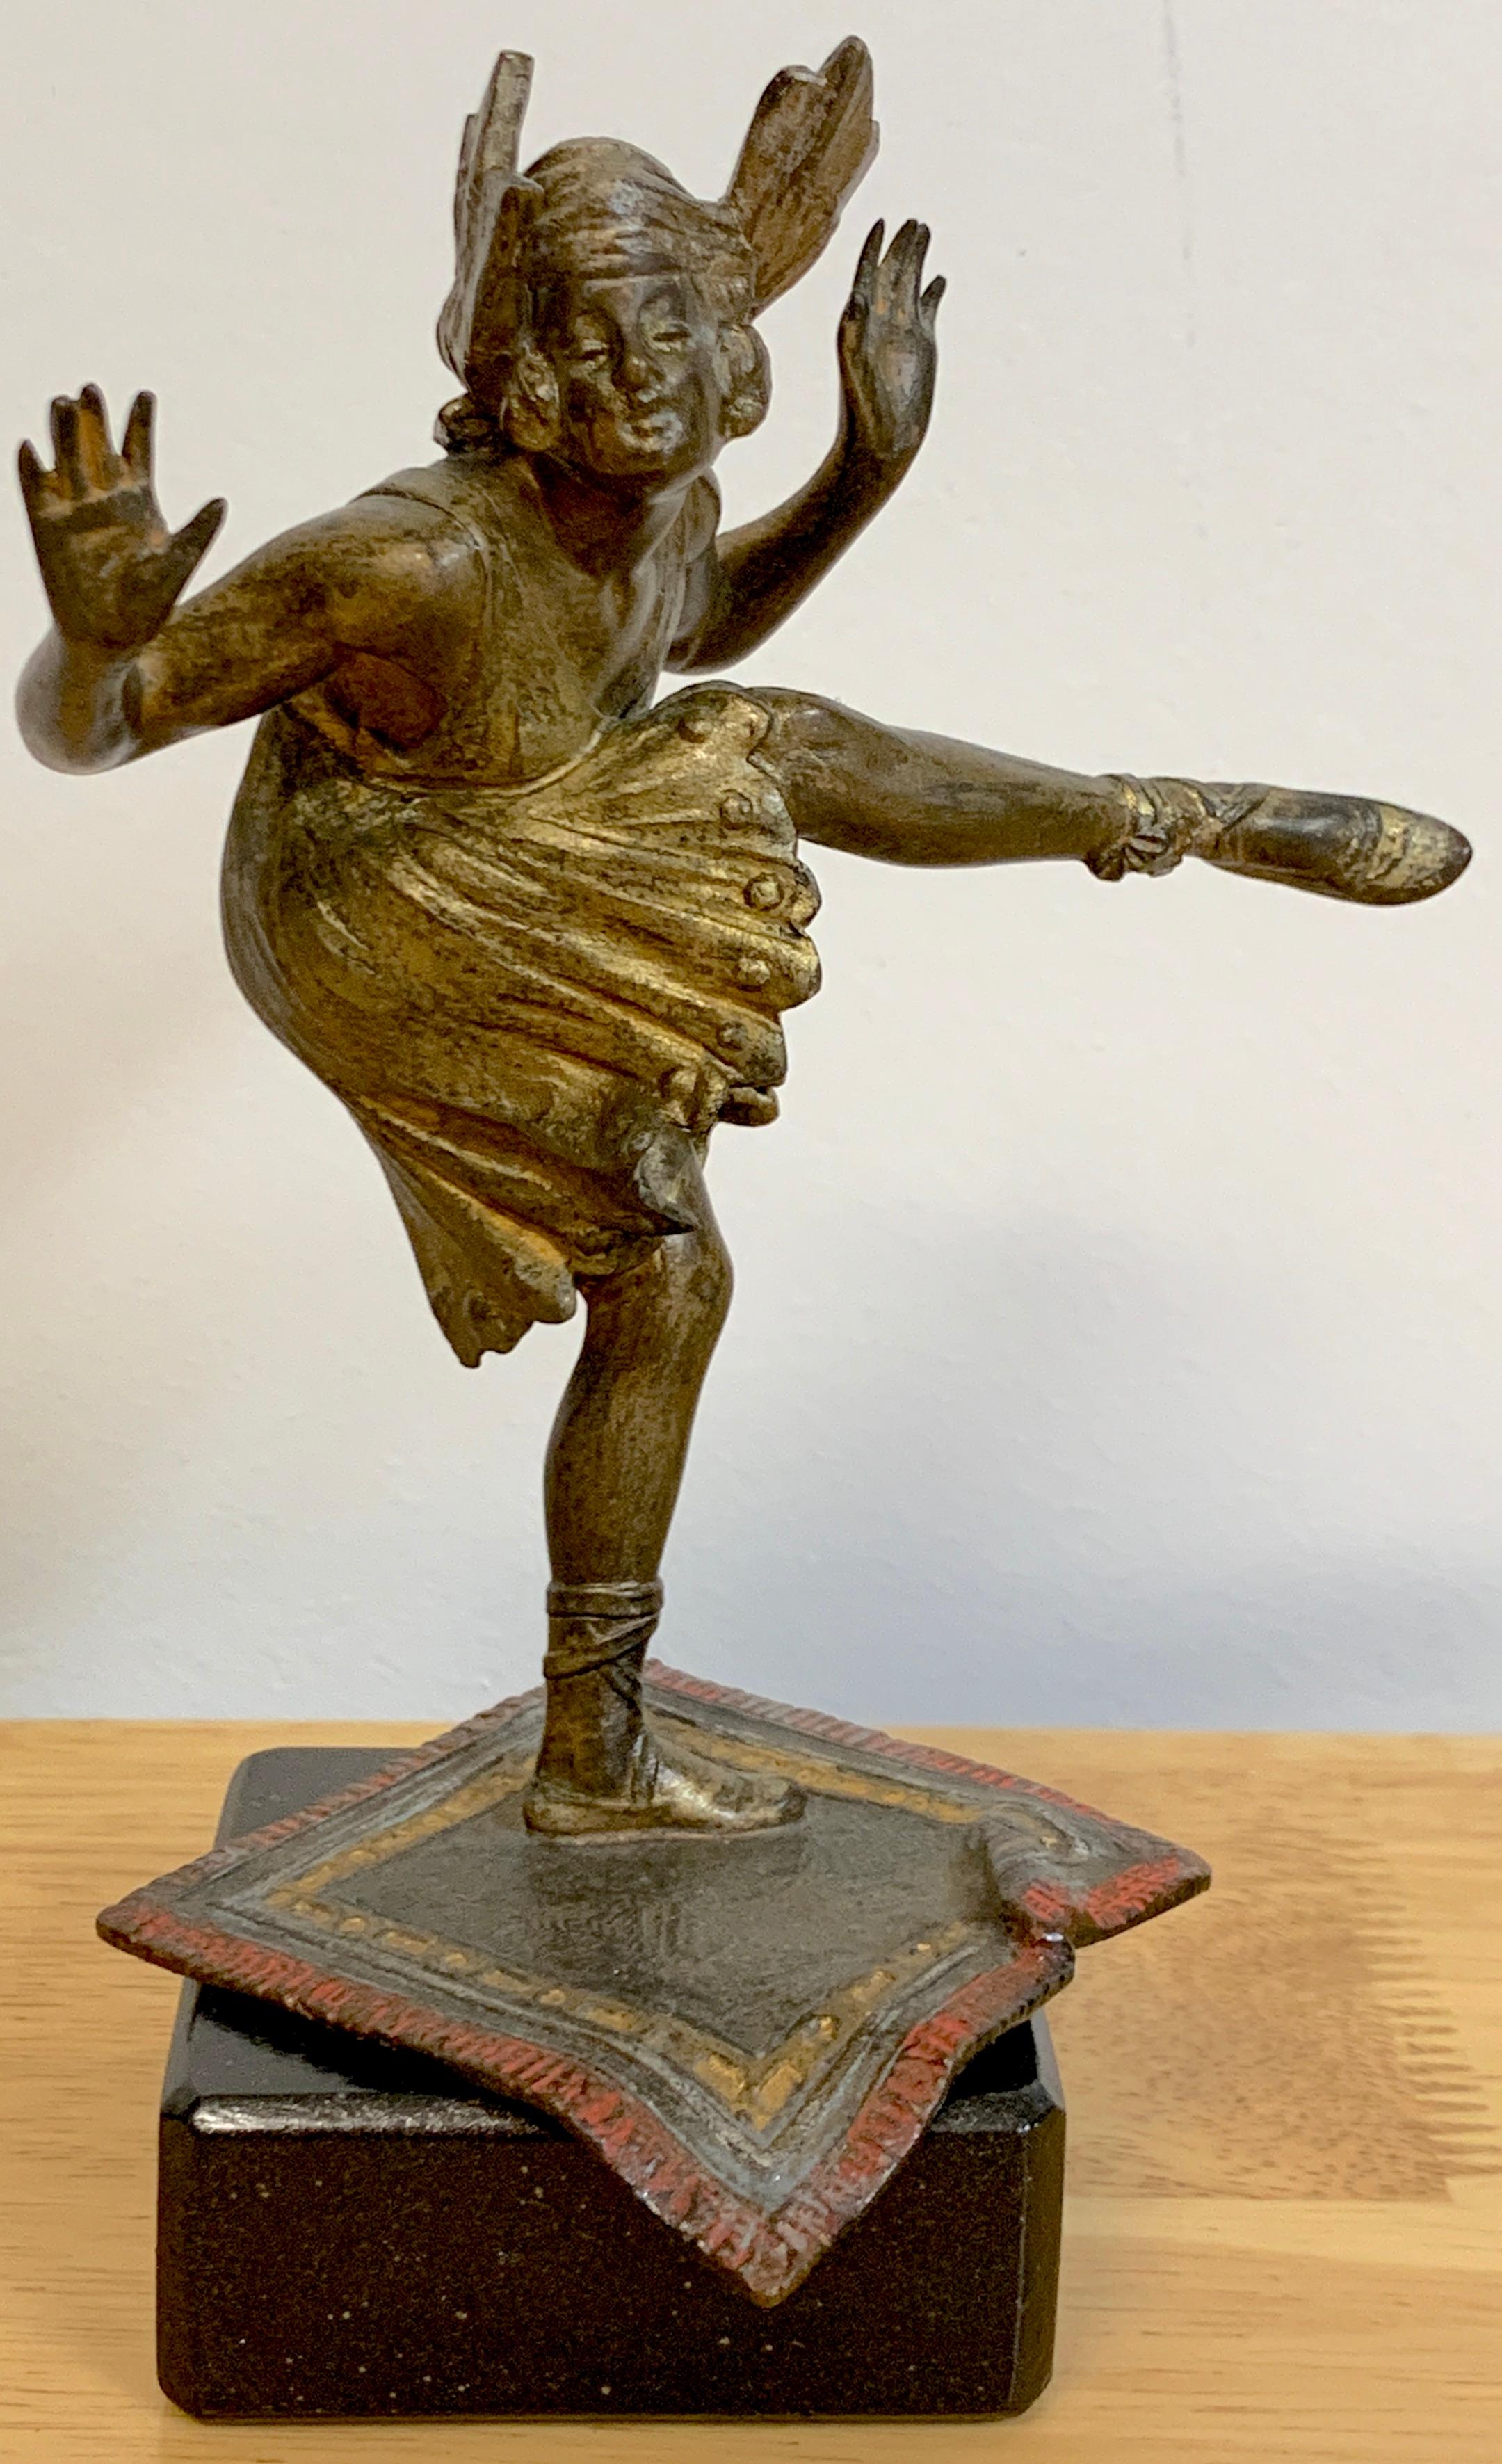 Wiener kalt bemalte Bronze tanzender Flapper, Bergman zugeschrieben 
Fantastisch modelliert und bemalt, schön patinierte Oberfläche, unsigniert
Dieses Werk ist 6,5 Zoll hoch, 3 Zoll breit und 3 Zoll tief.